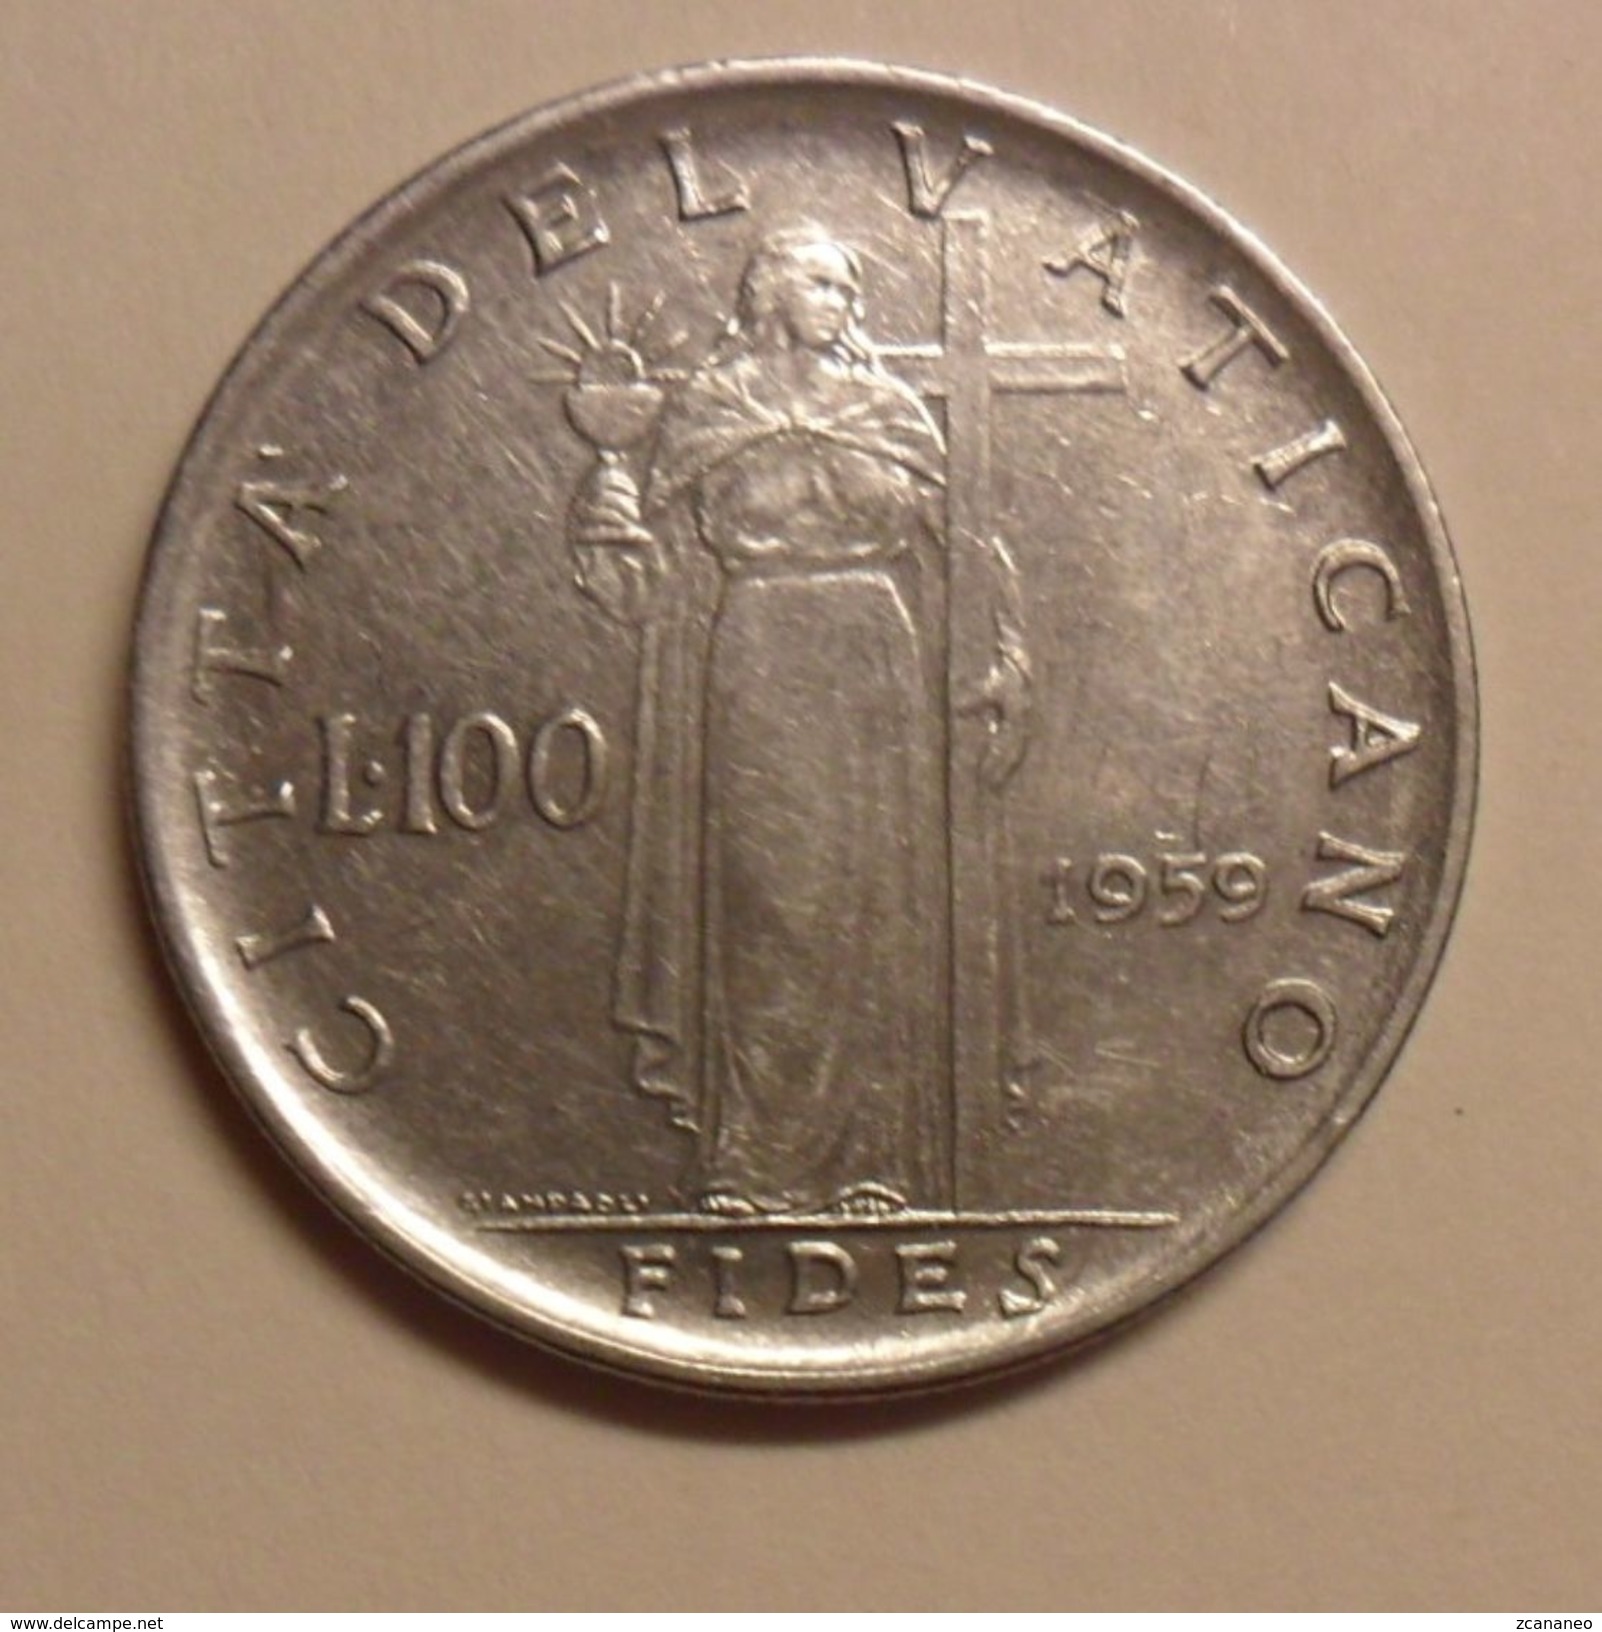 100 LIRE DEL VATICANO 1959 DI GIOVANNI XXIII° - - Vatican